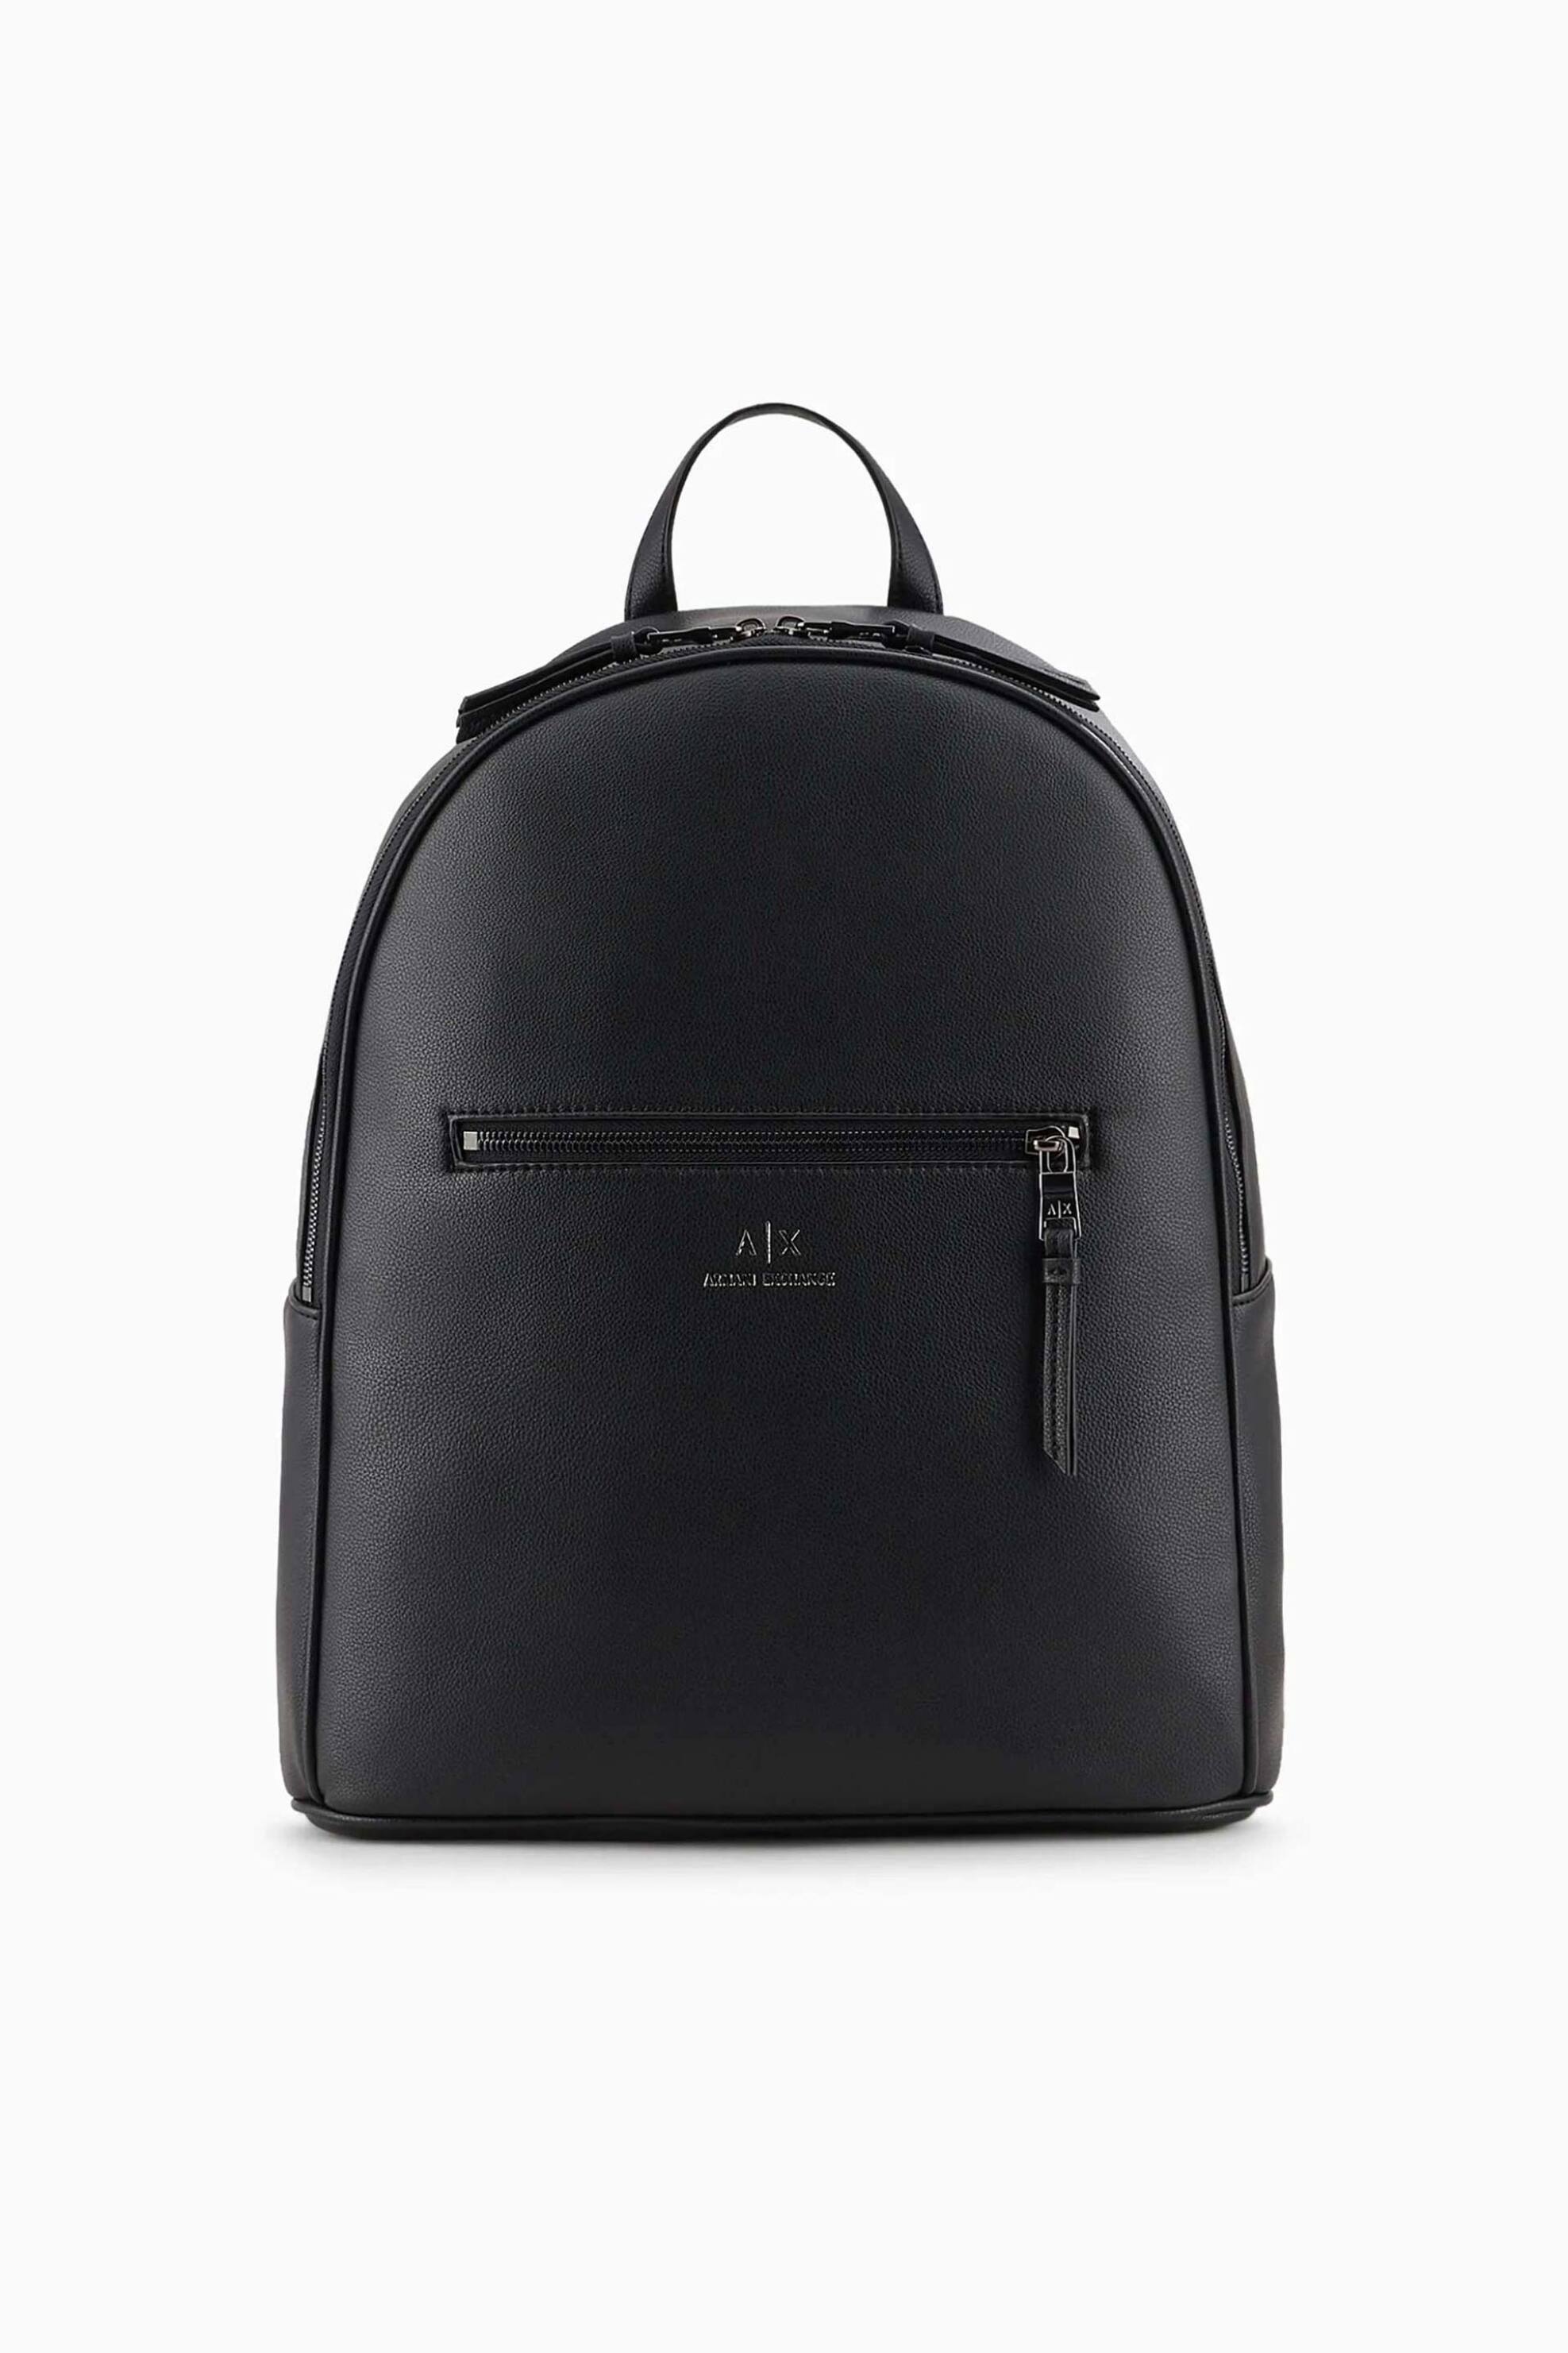 Ανδρική Μόδα > Ανδρικές Τσάντες > Ανδρικά Σακίδια & Backpacks Armani Exchange ανδρικό backpack με μεταλλικό logo - 952387CC830 Μαύρο